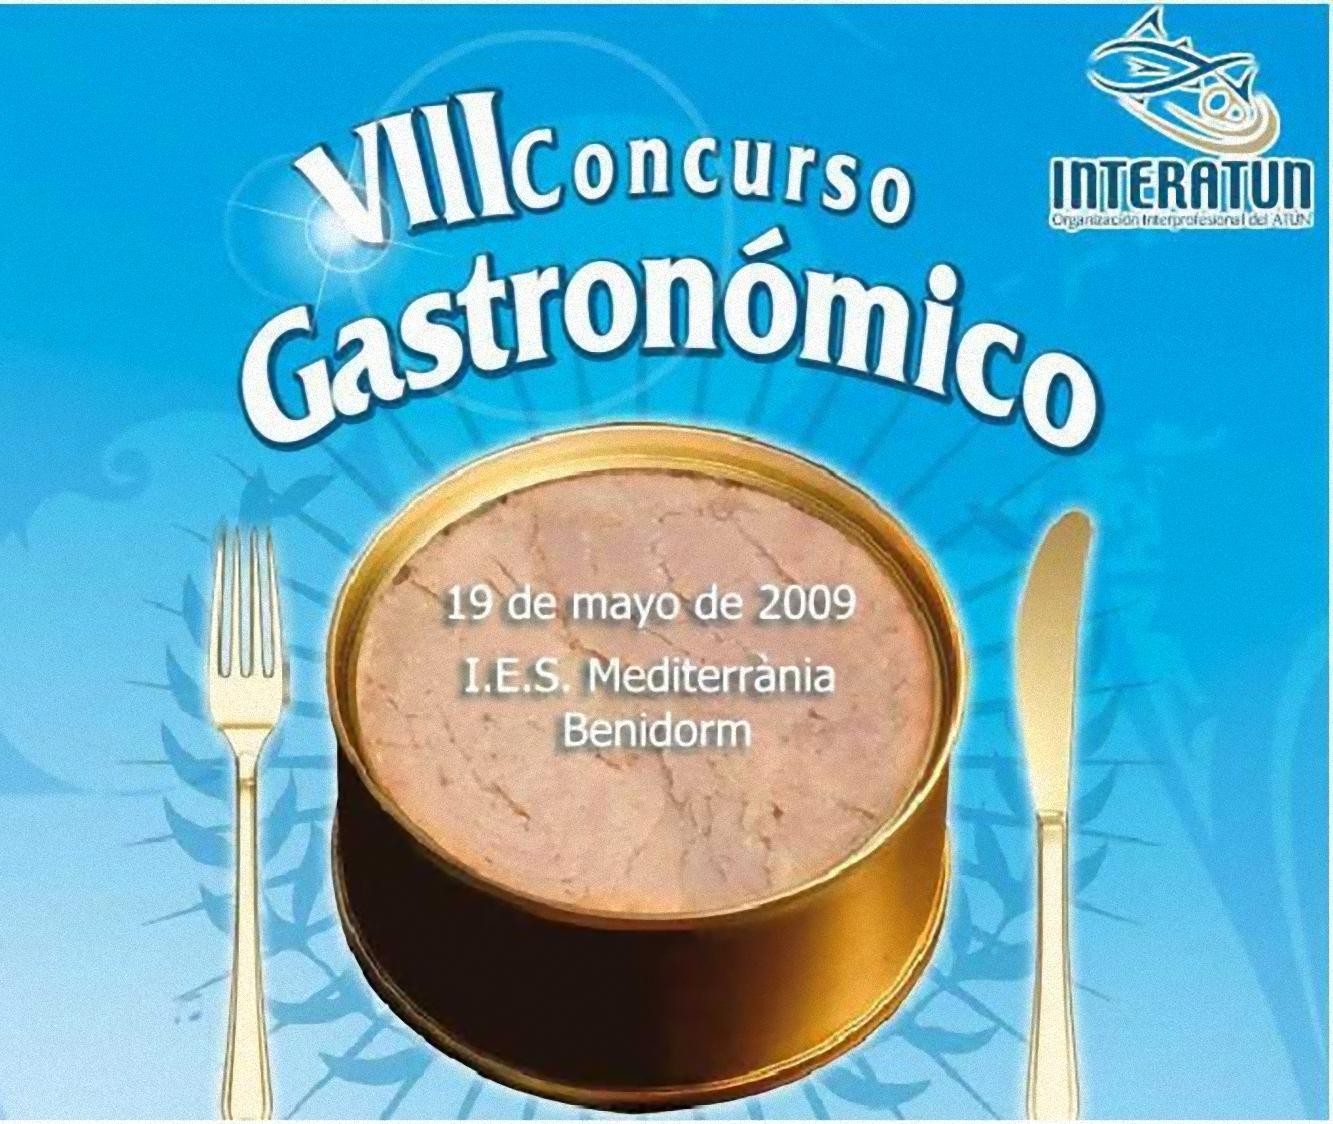 VIII Concurso Gastronómico Interatún